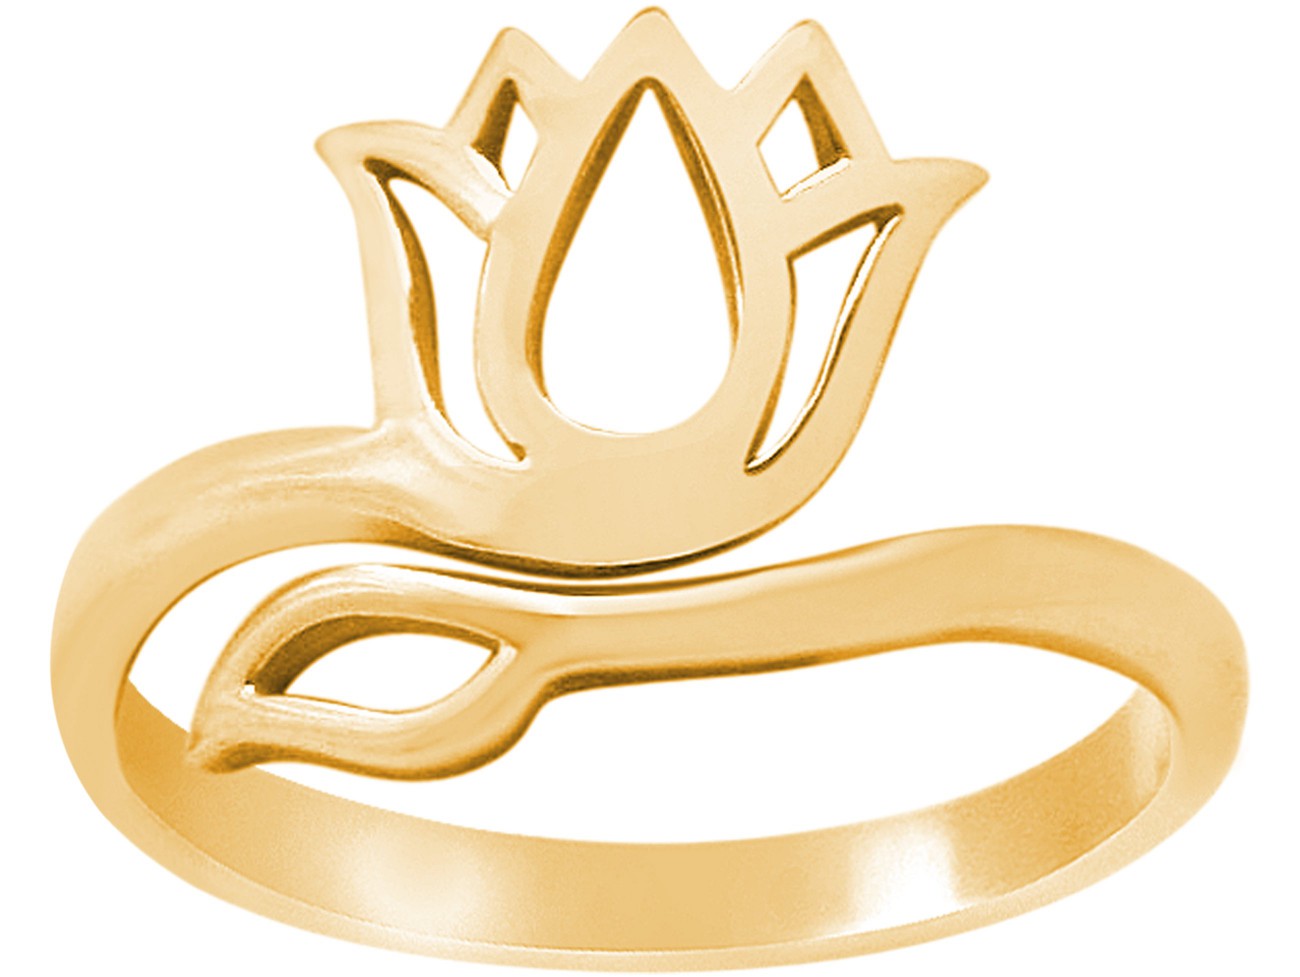 GEMSHINE Größenverstellbarer Ring aus hochwertig vergoldetem 925 Silber mit YOGA Lotusblume. Hervorragende Qualität und Verarbeitung. Made in Madrid / Spanien. Im eleganten Schmucketui geliefert.